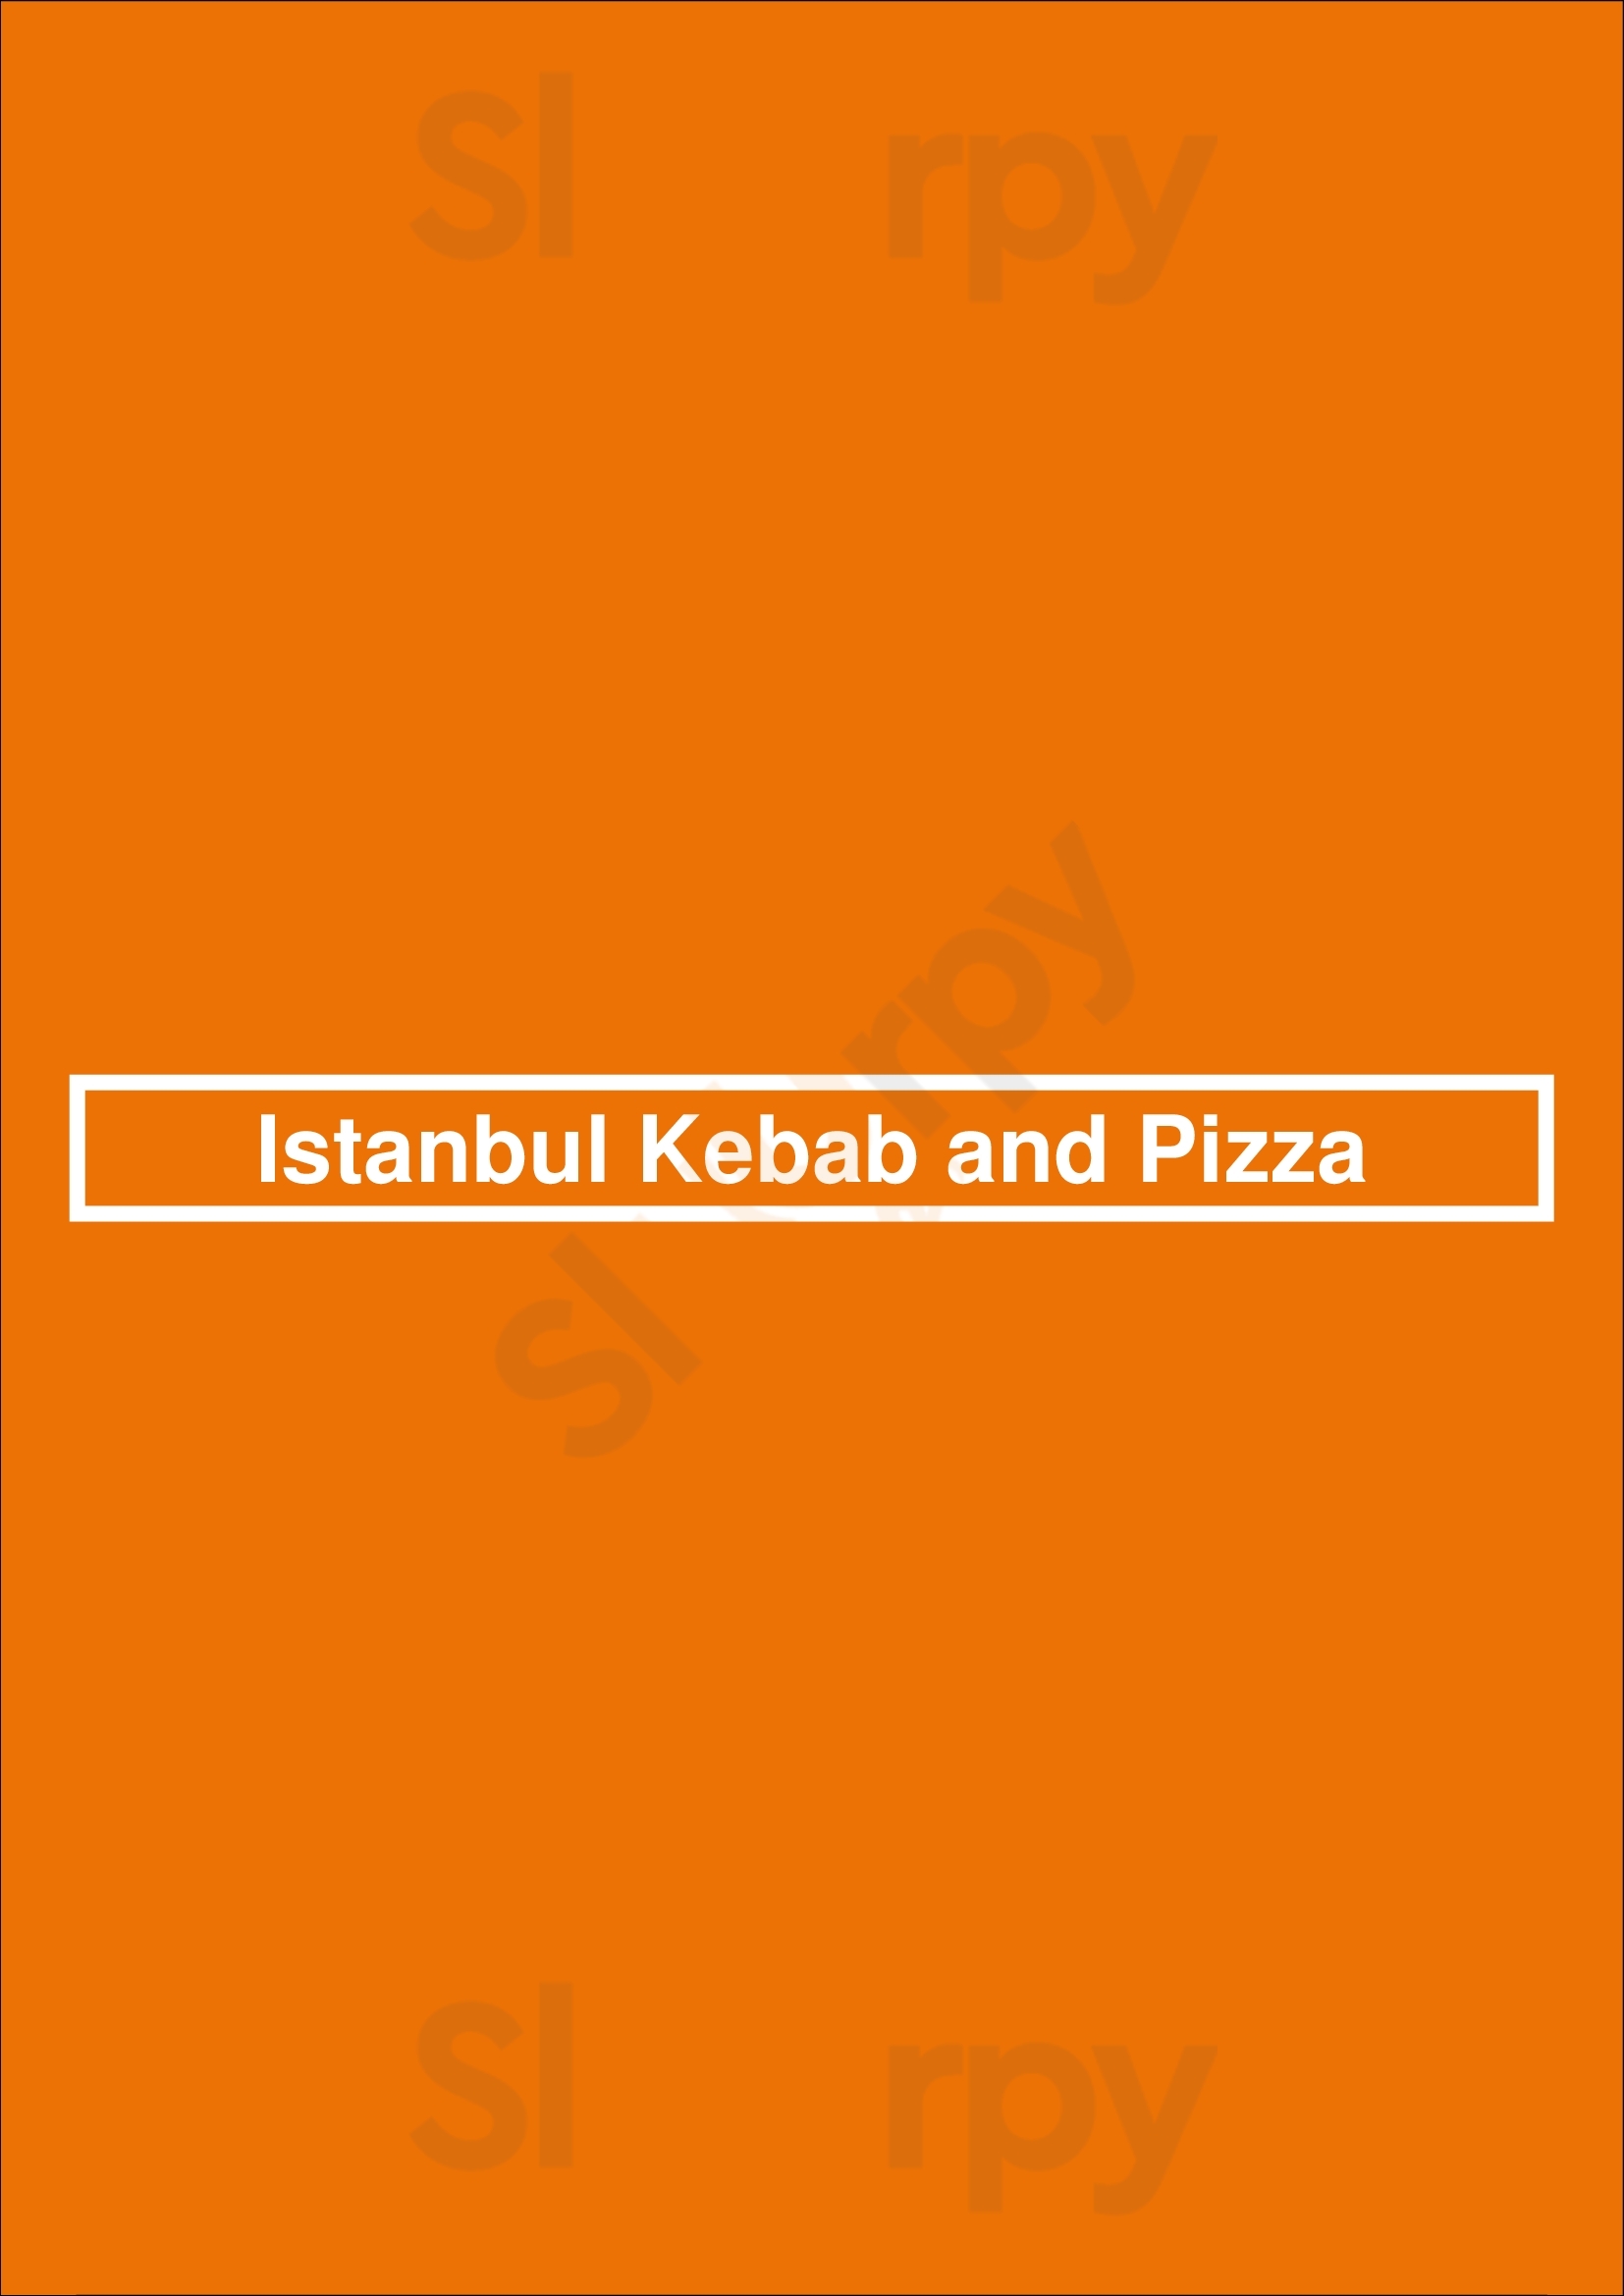 Istanbul Kebab And Pizza Belfast Menu - 1